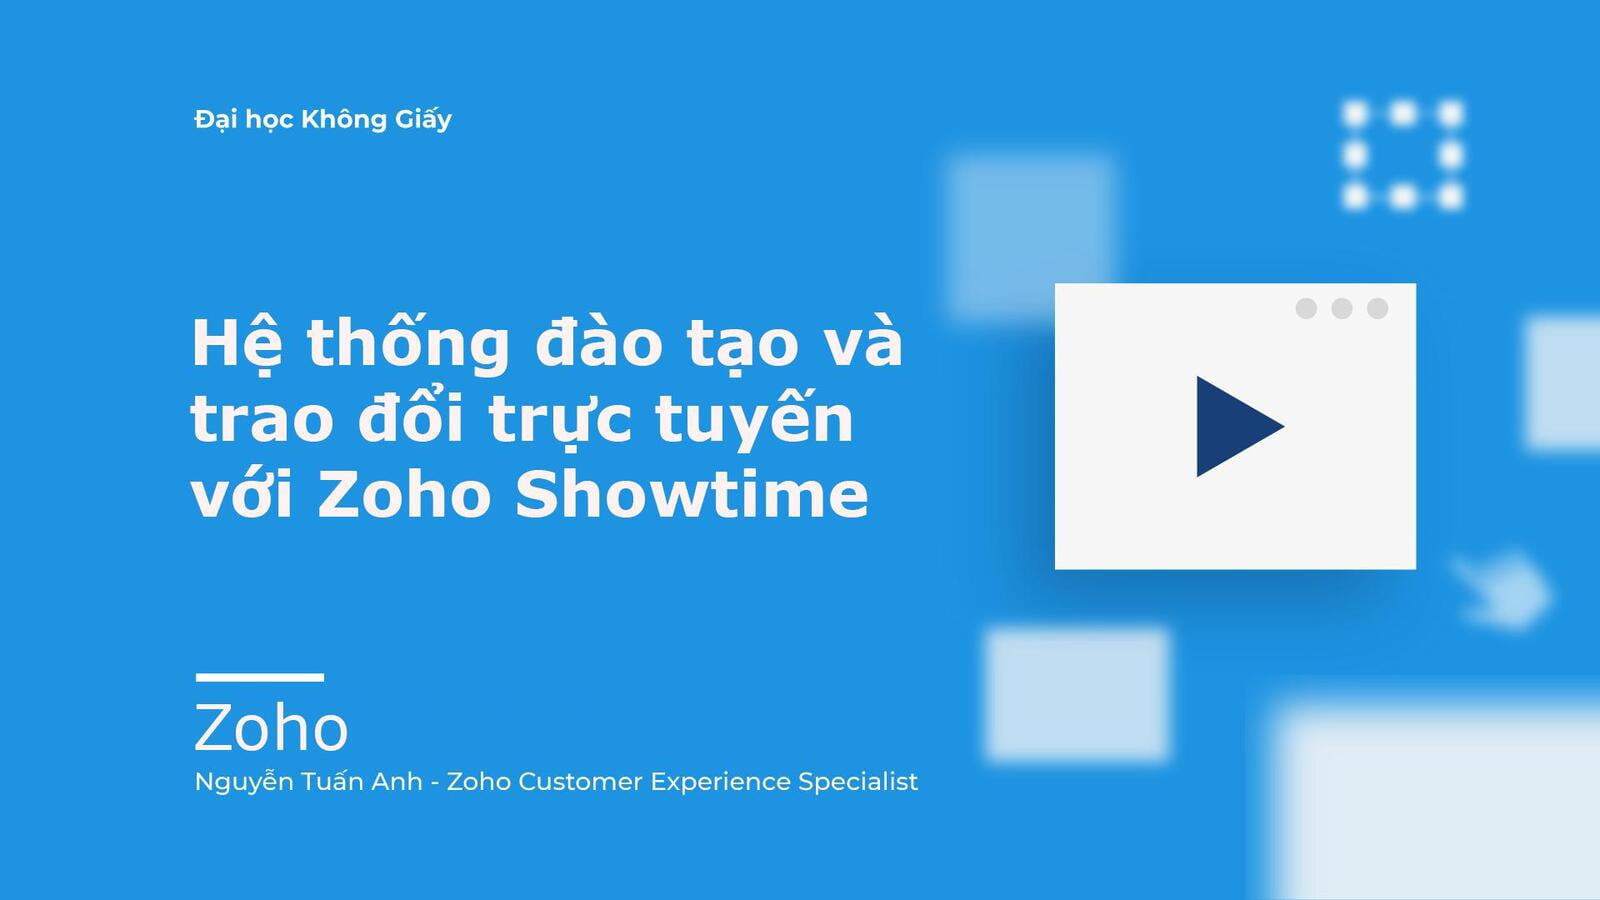 Hướng dẫn triển khai hệ thống đào tạo và trao đổi trực tuyến  với Zoho Showtime